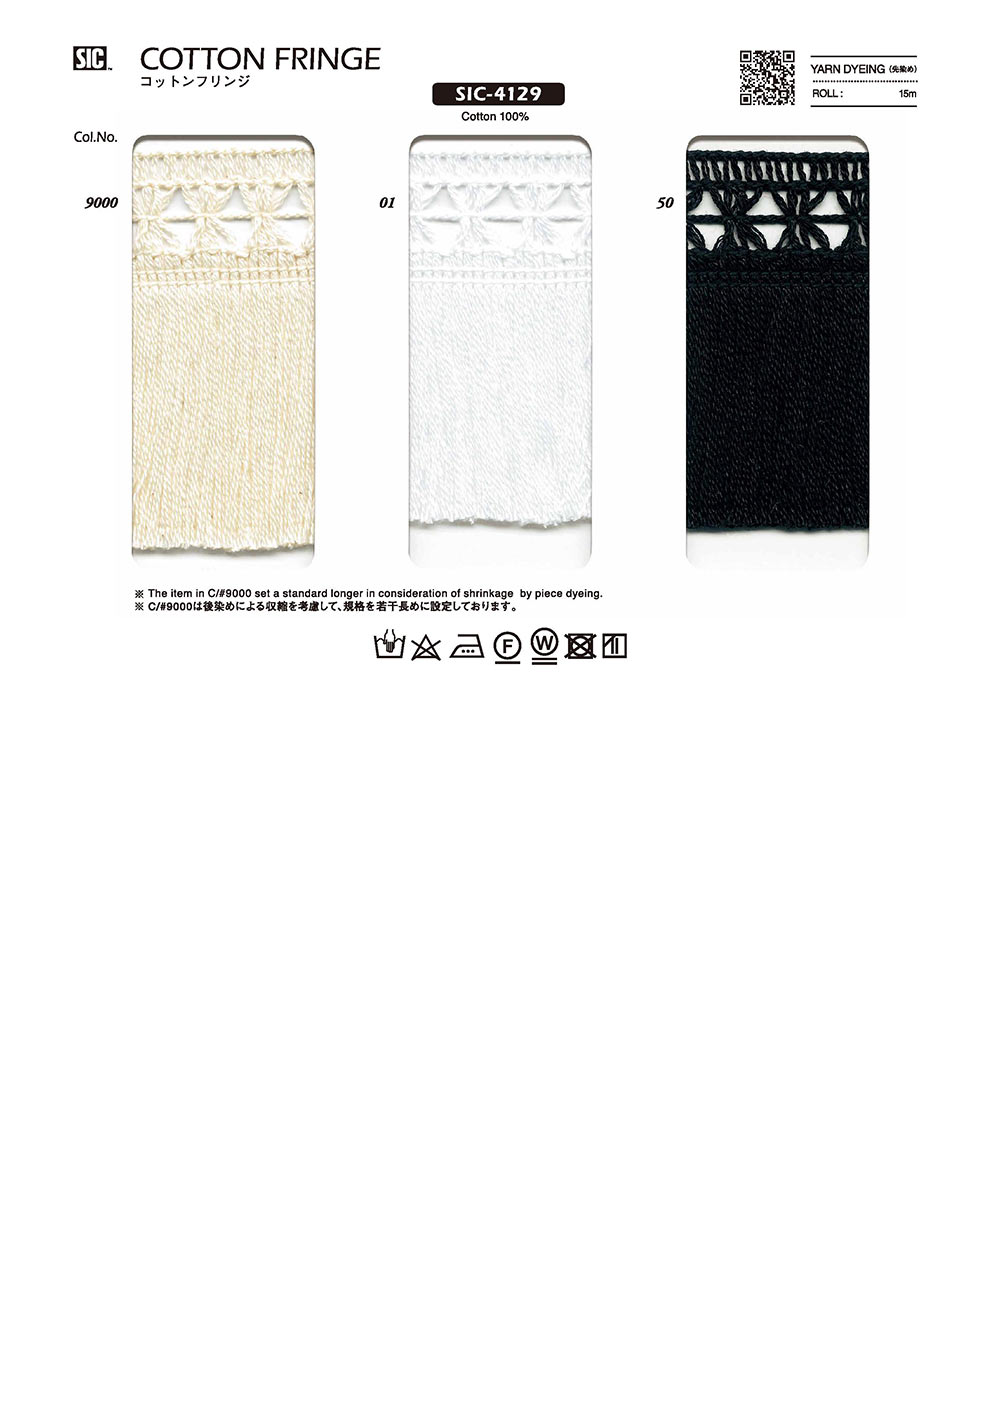 SIC-4129 Cotton Fringe[Lace] SHINDO(SIC)